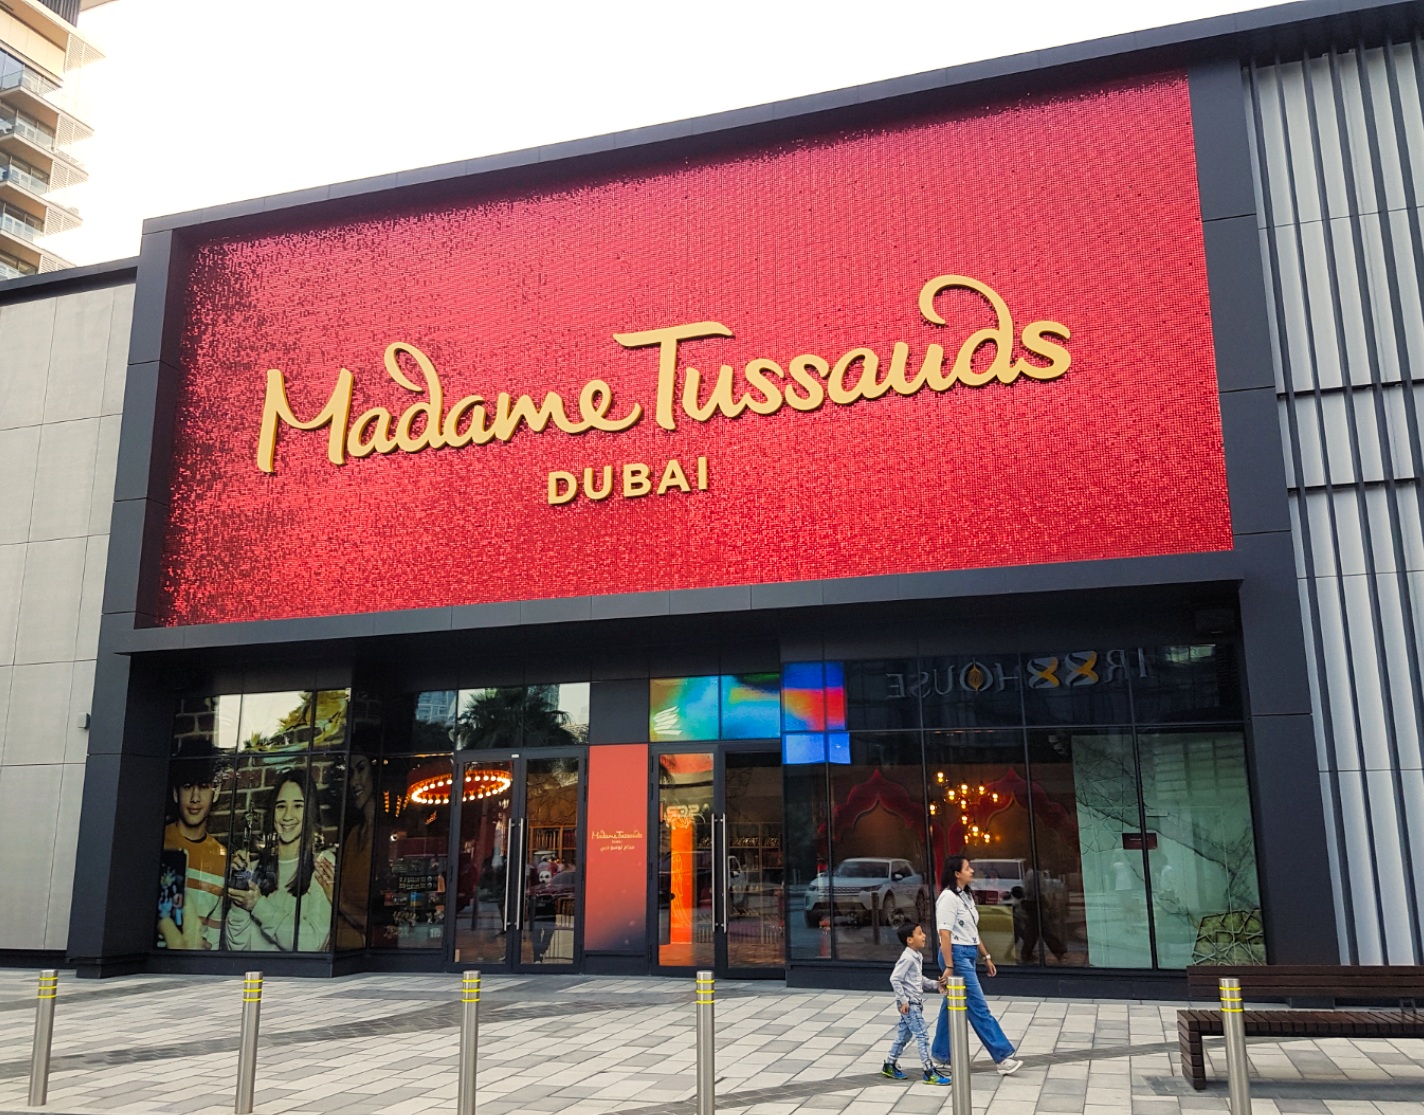 Madame Tussauds Dubai - Museum entrance